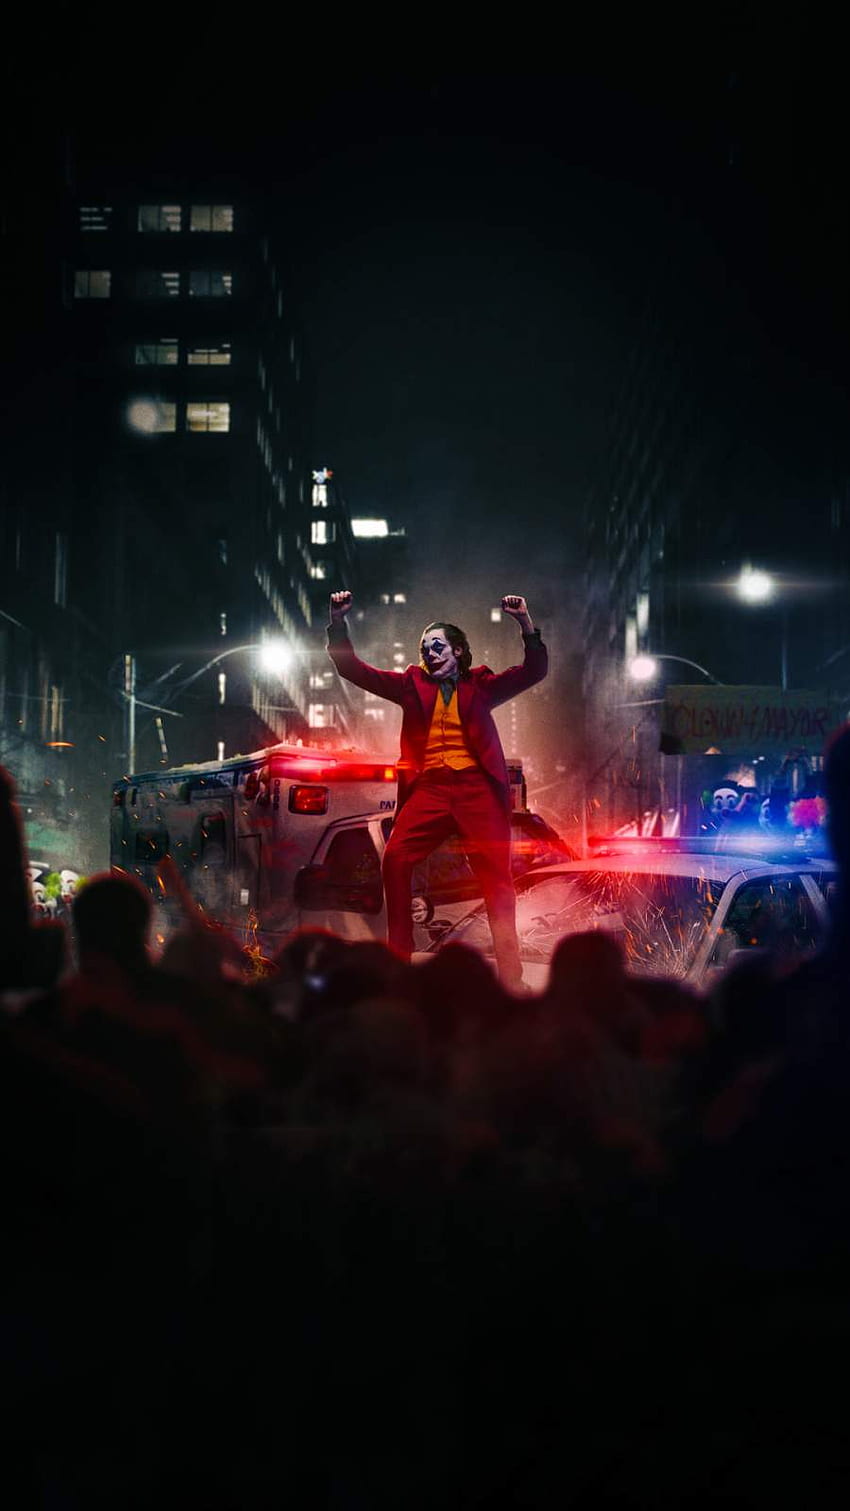 Joker tanzt auf Polizeiauto iPhone - iPhone : iPhone HD-Handy-Hintergrundbild